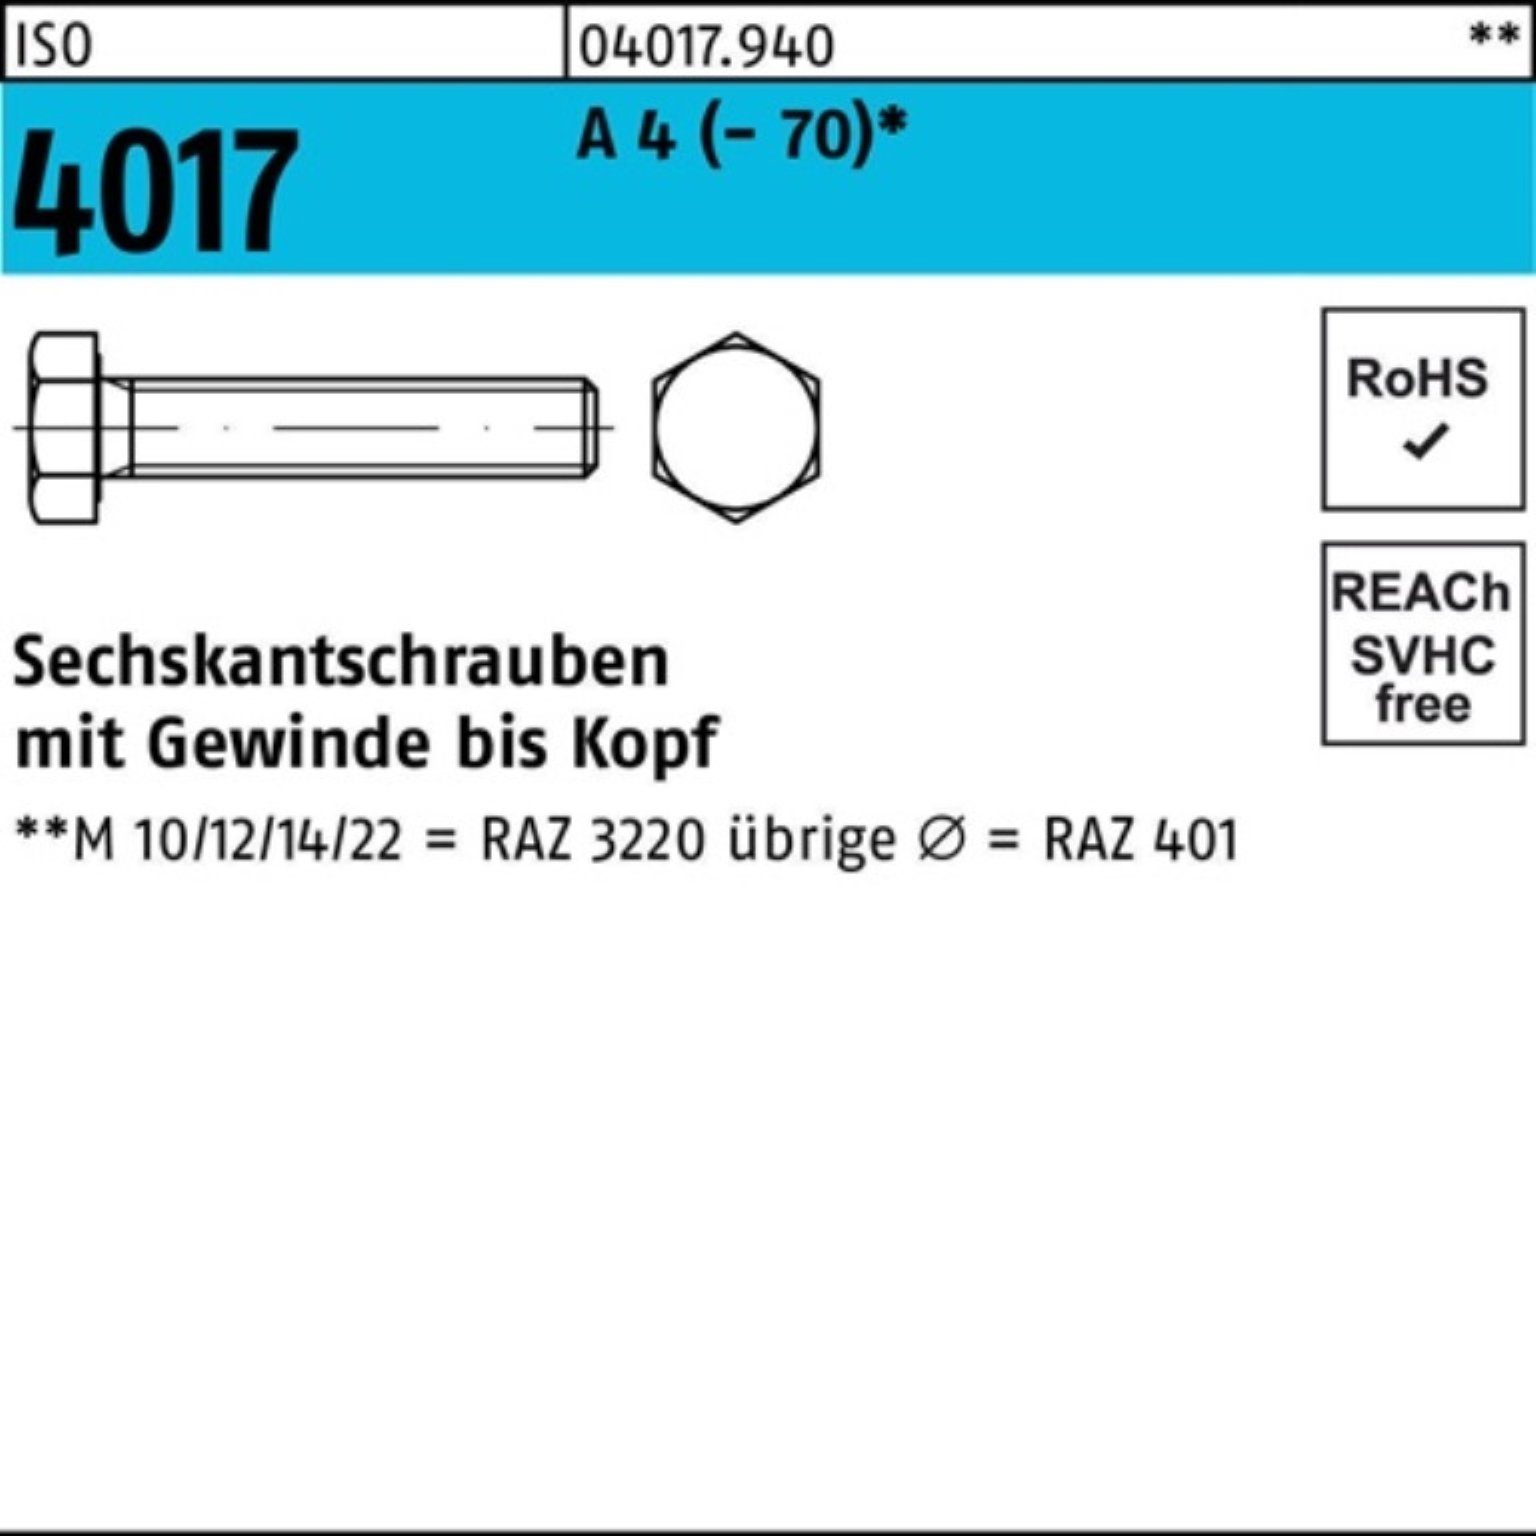 Bufab Sechskantschraube 100er ISO Stück M24x A (70) VG Sechskantschraube 4 Pack 160 4017 1